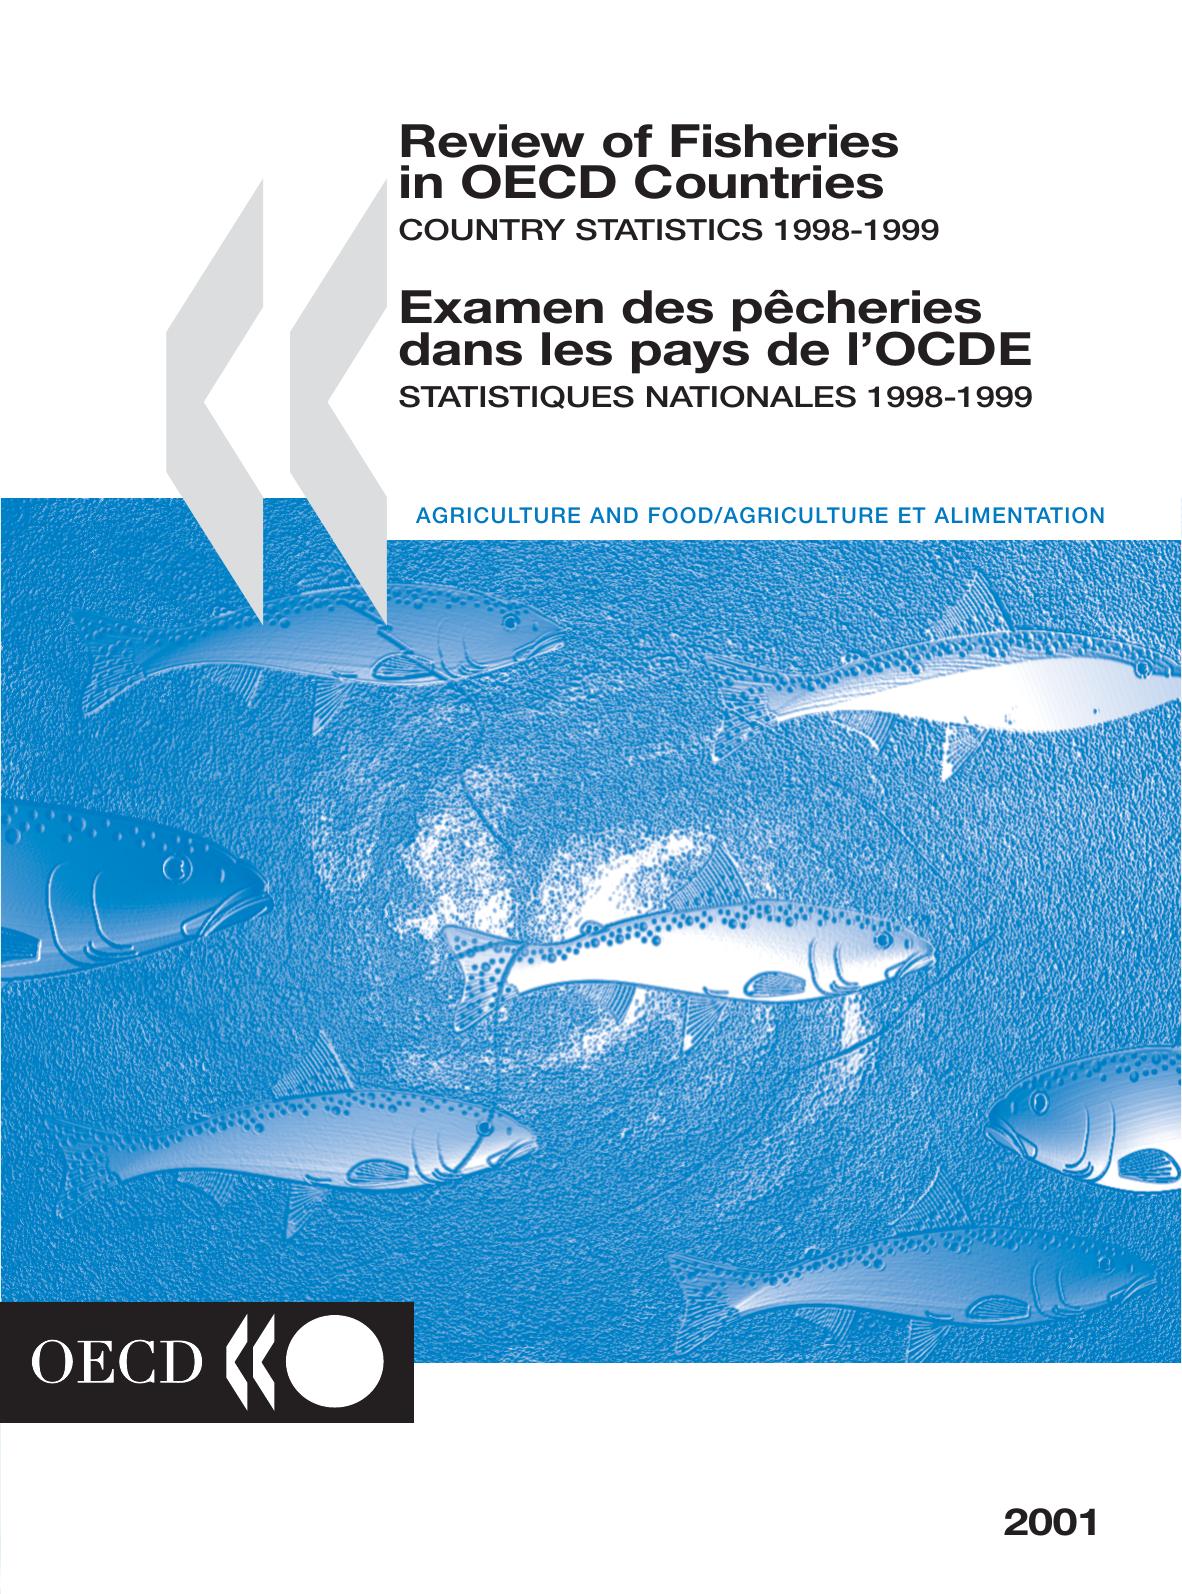 Review of Fisheries in OECD Countries  / Examen des p.cheries dans les pays de l'OCDE